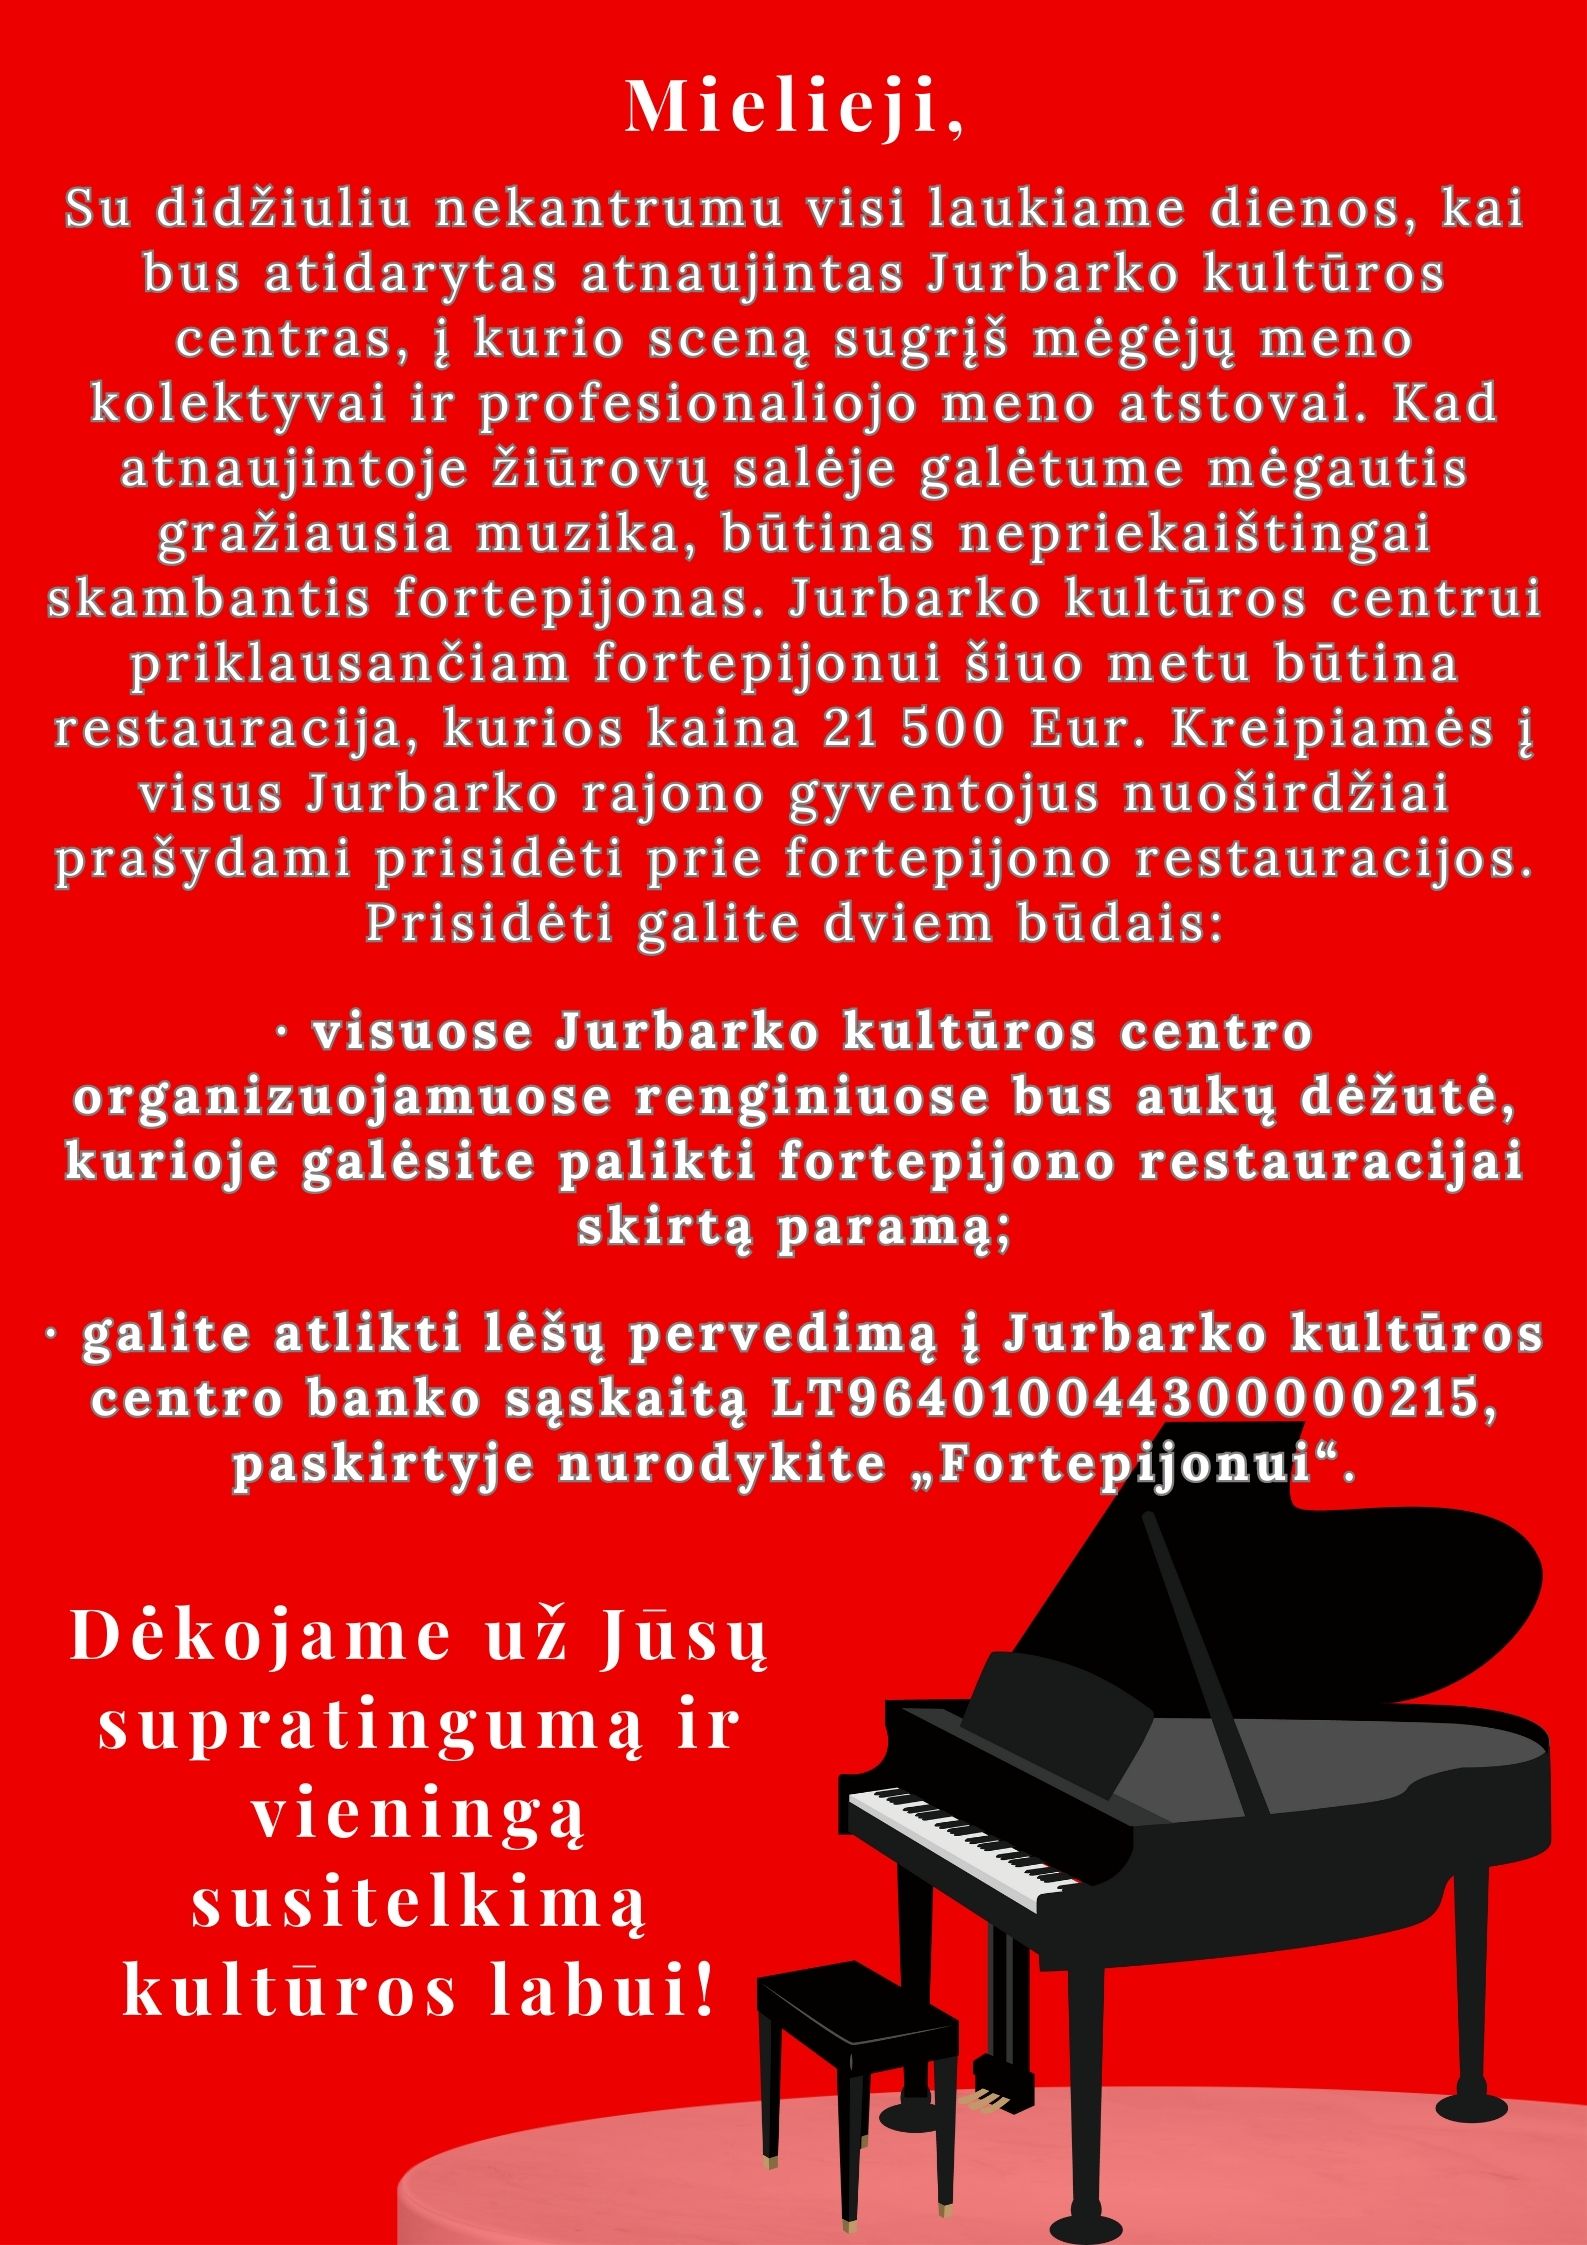 Kviečiame prisidėti prie Jurbarko kultūros centro fortepijono restauracijos